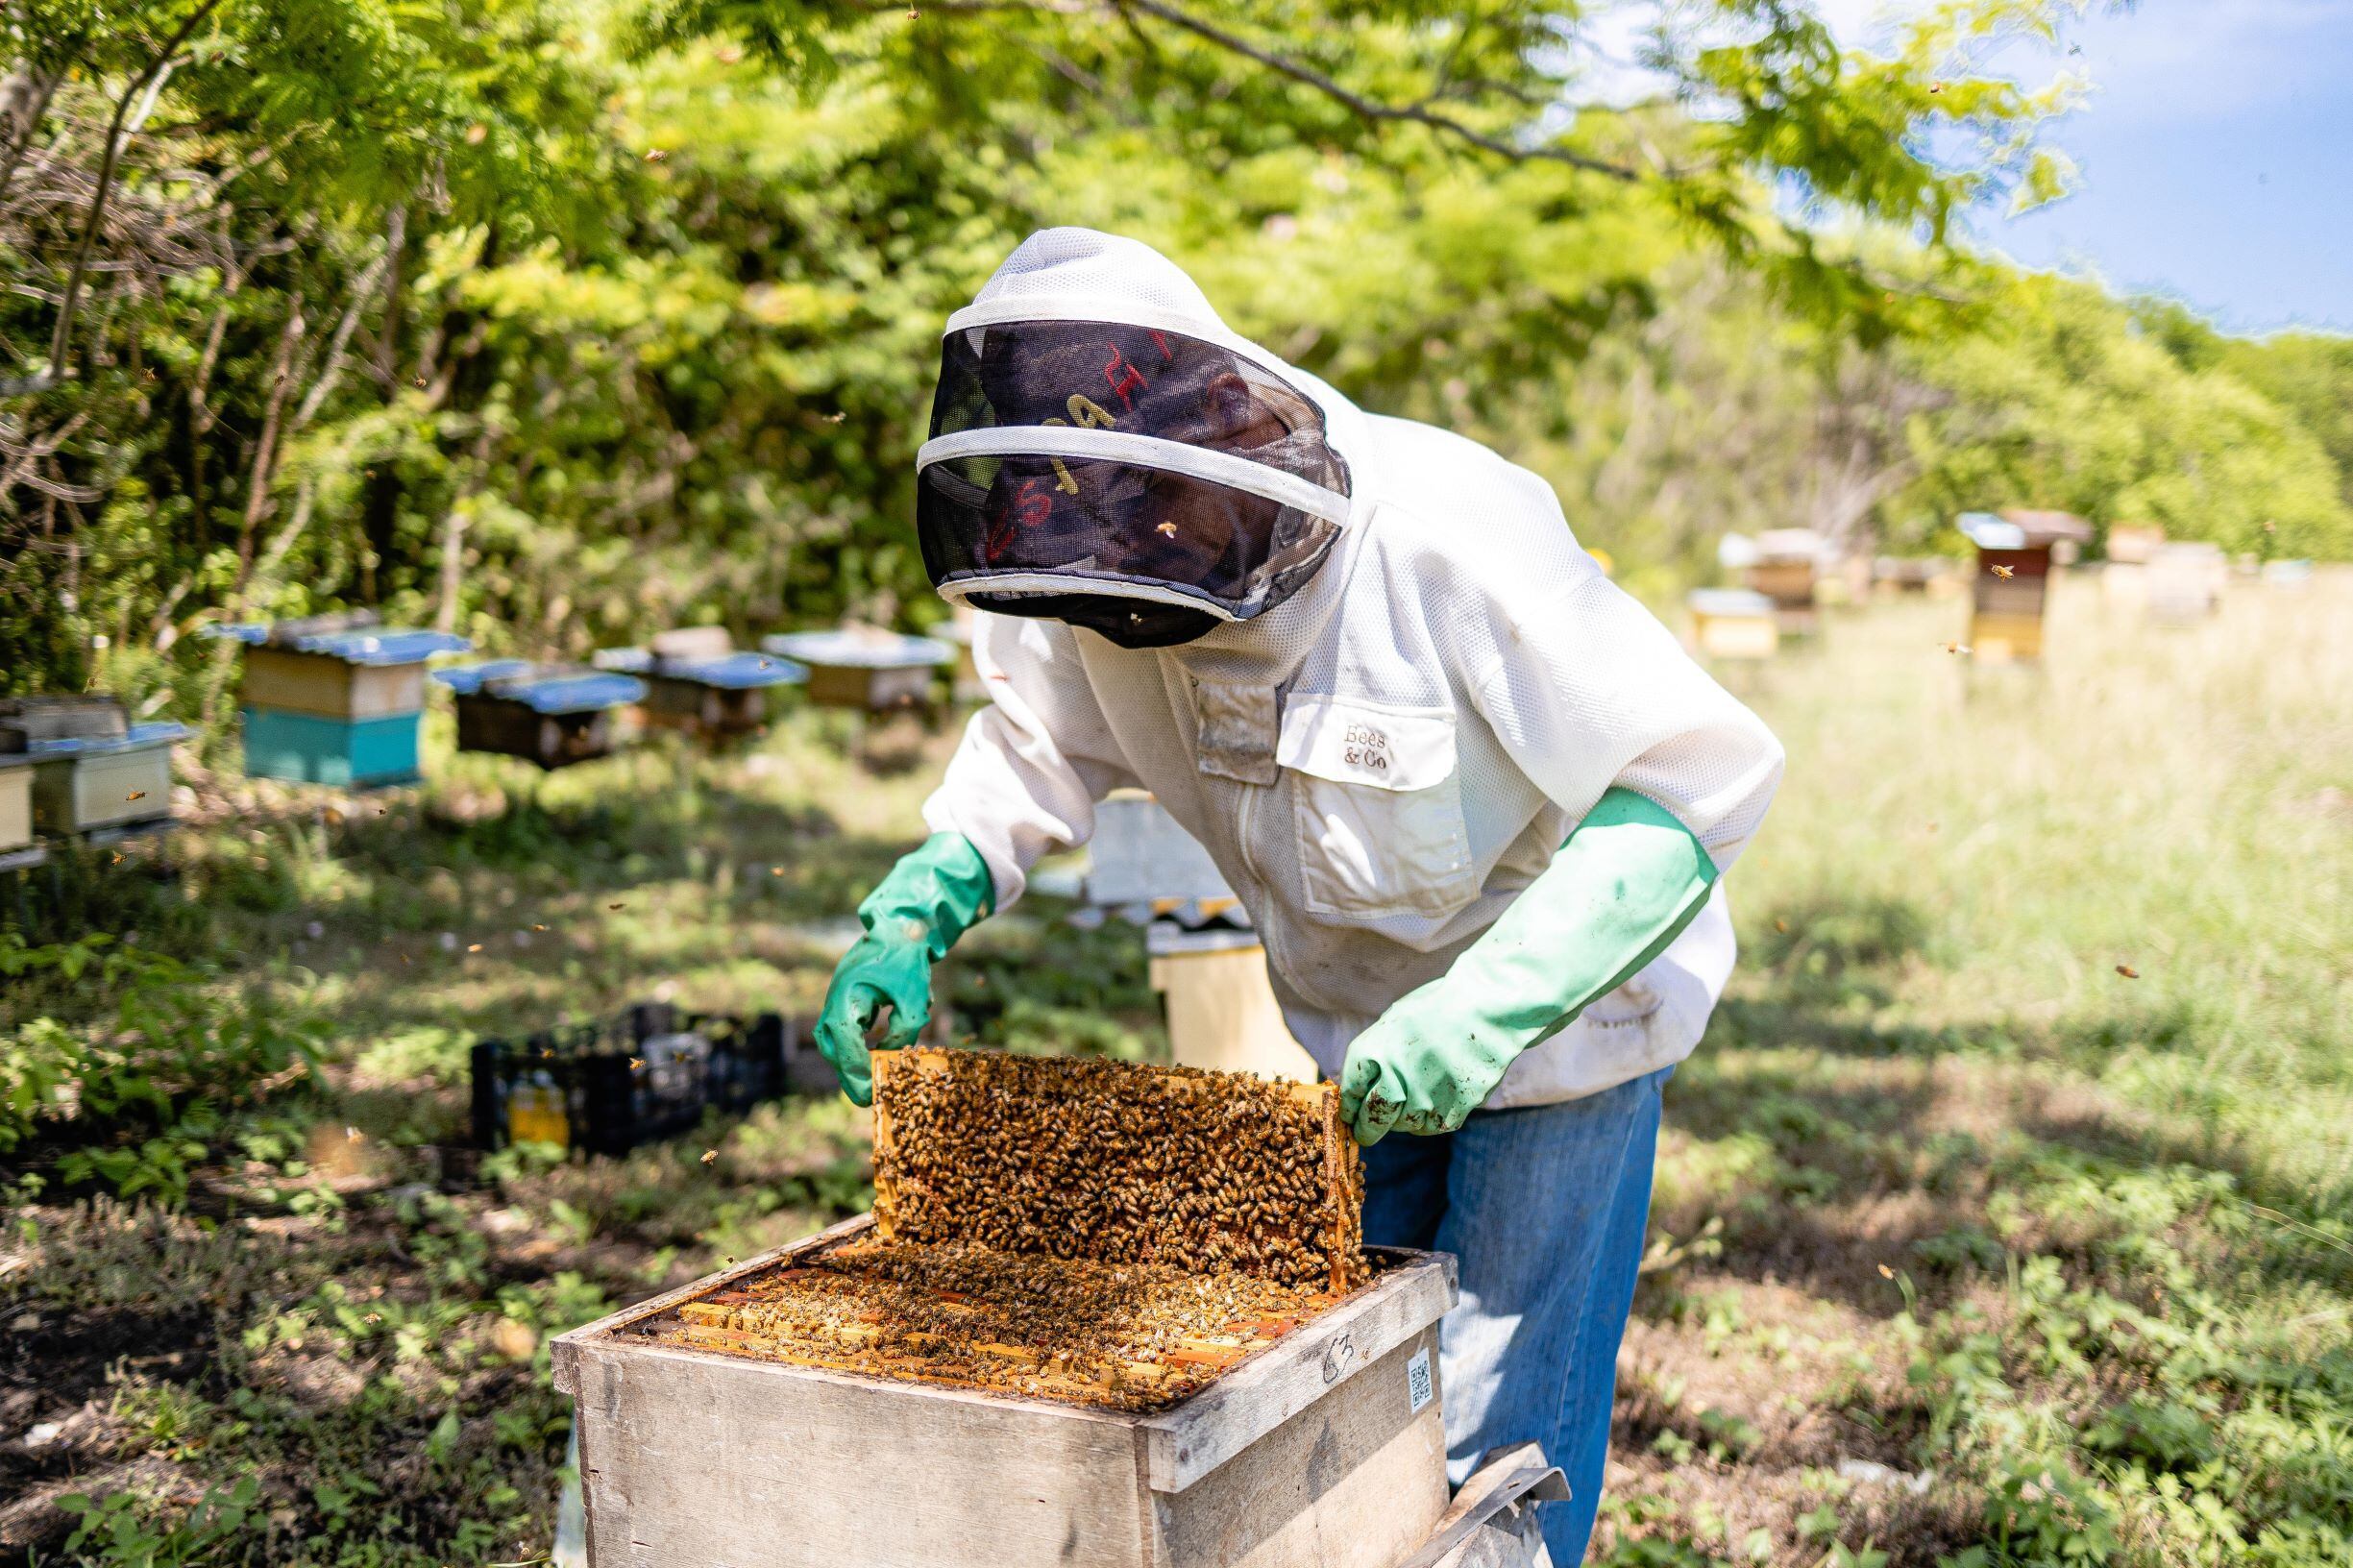 Las principal producción de miel en Costa Rica se concentra en las provincias de Guancaste, Puntarenas y San José. La cosecha de miel se desarrolla entre diciembre y abril. Se estiman hay en producción unas 35.000 colmenas.